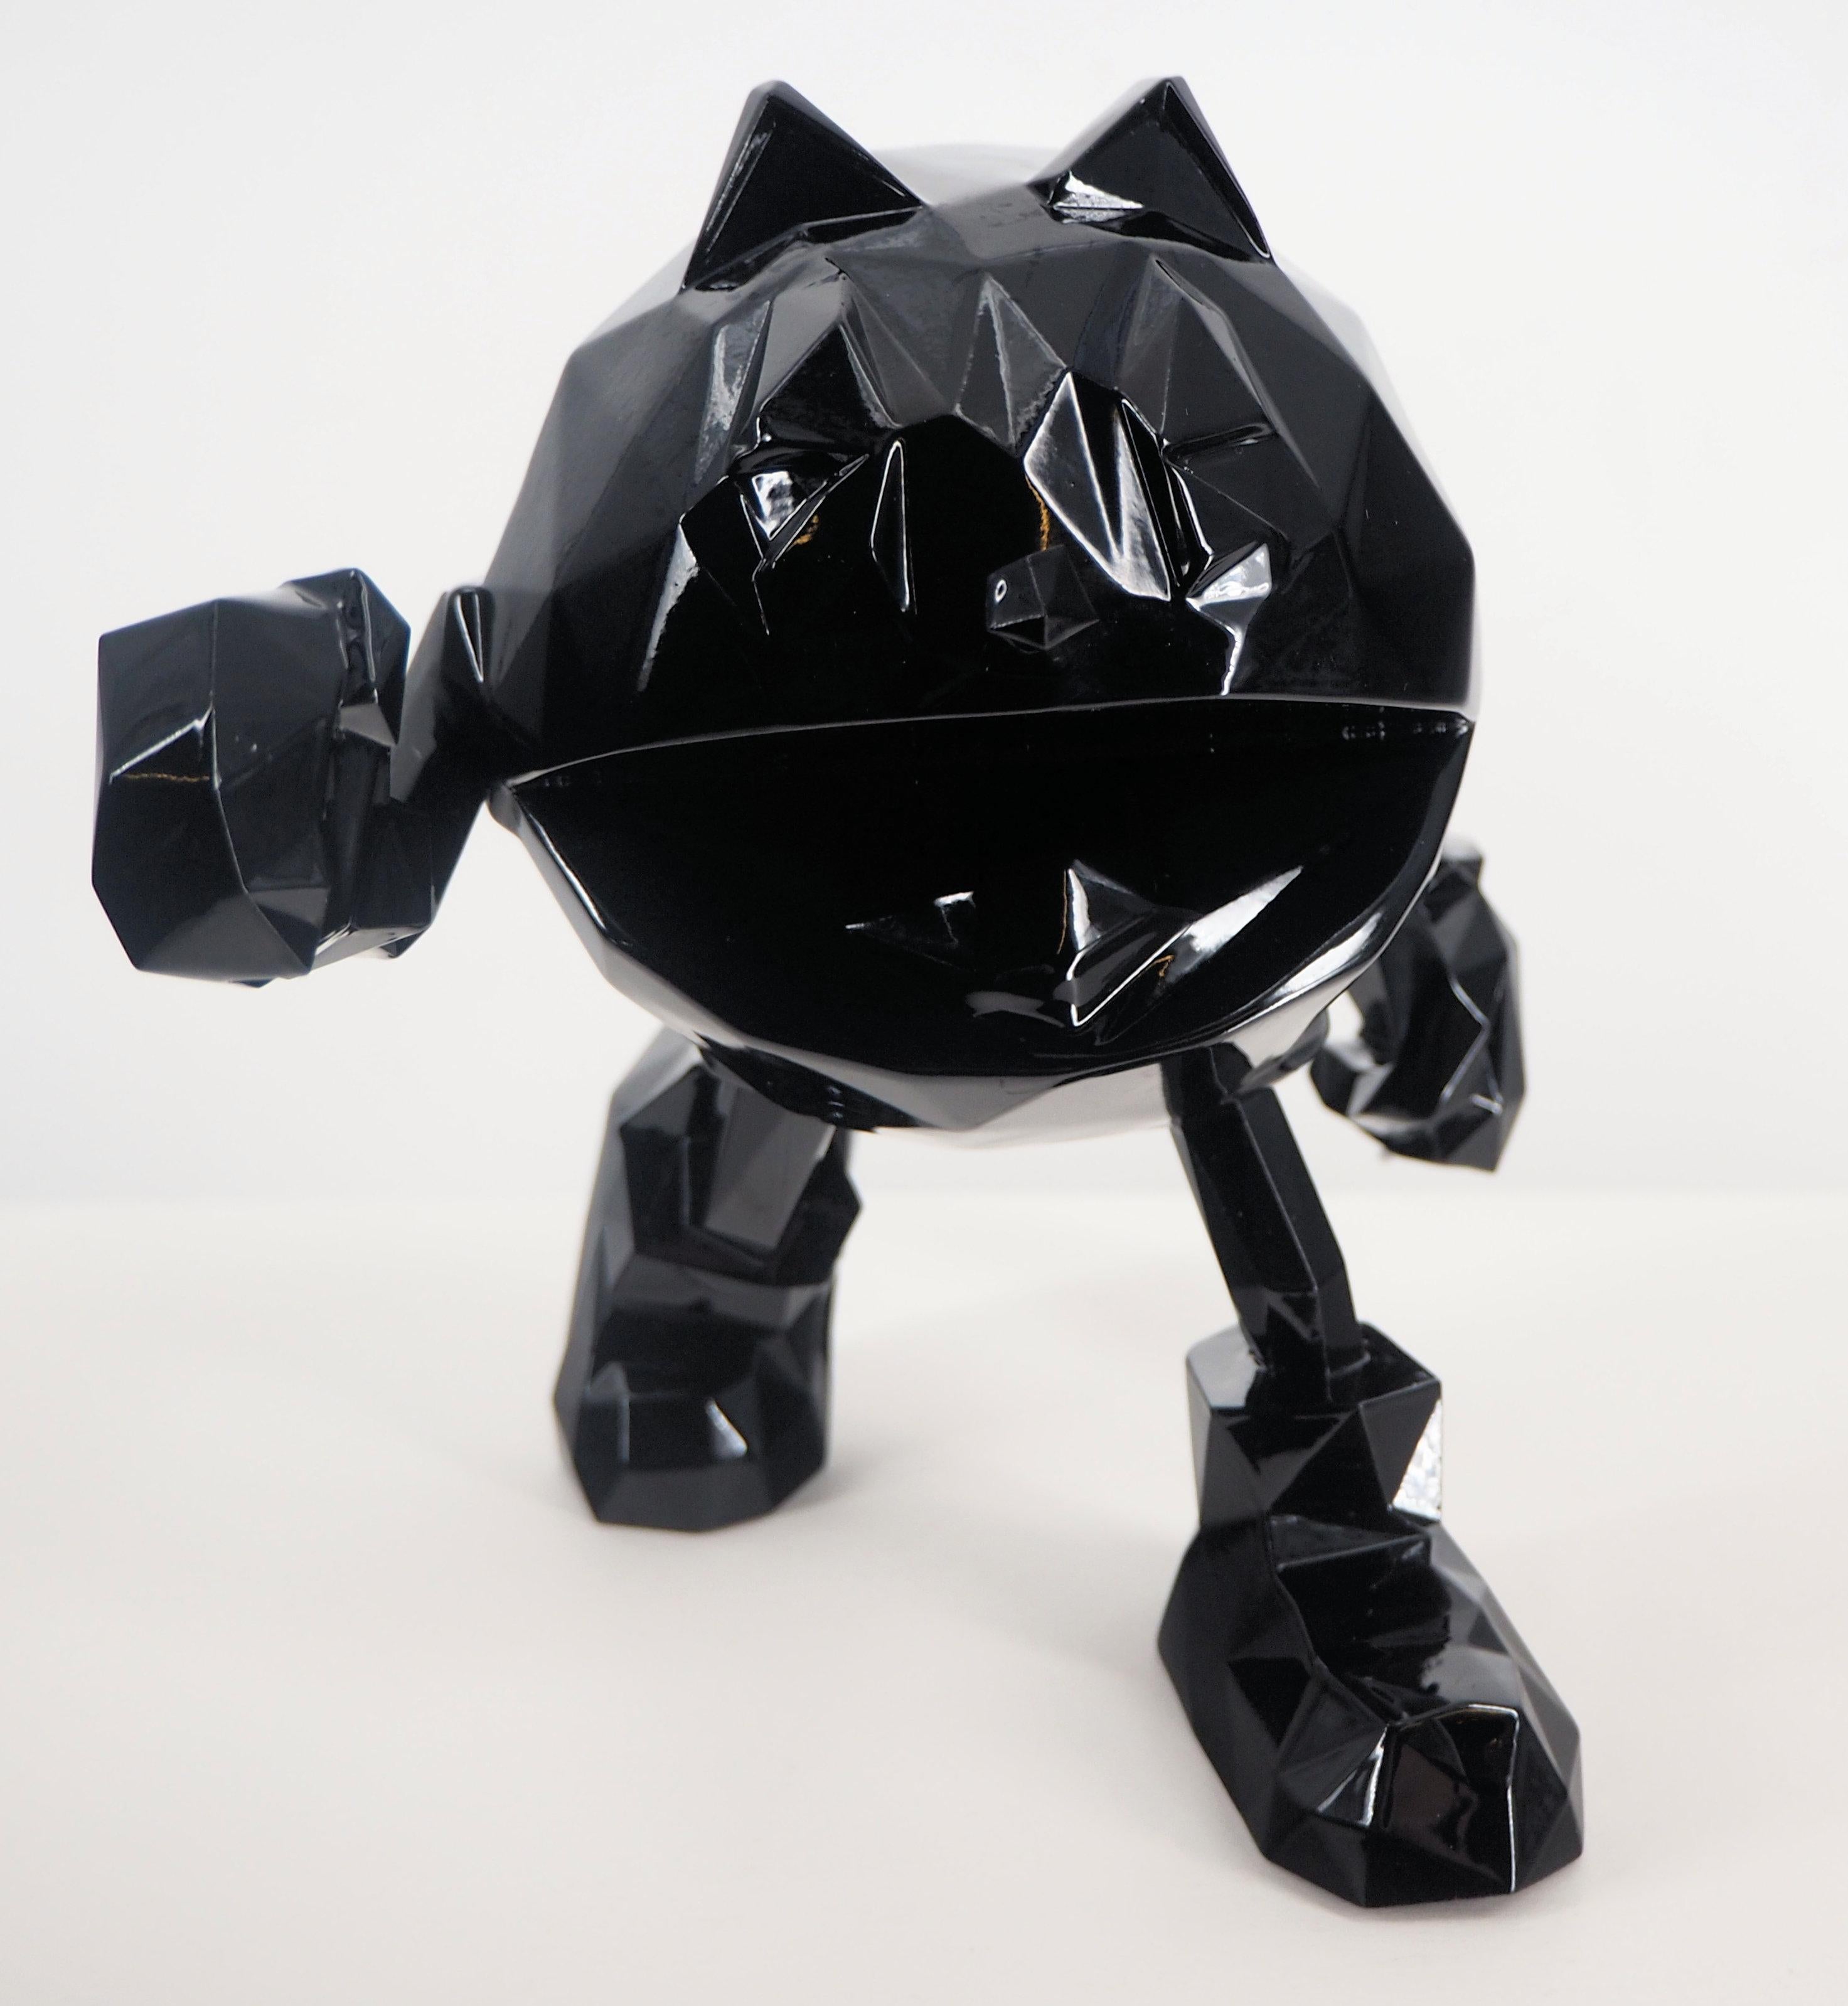 Richard ORLINSKI
Pac Man (édition noire)

Sculpture en résine
Noir Métallique
Environ 18 cm (c. 7 in)
Présenté dans sa boîte d'origine

Excellent état